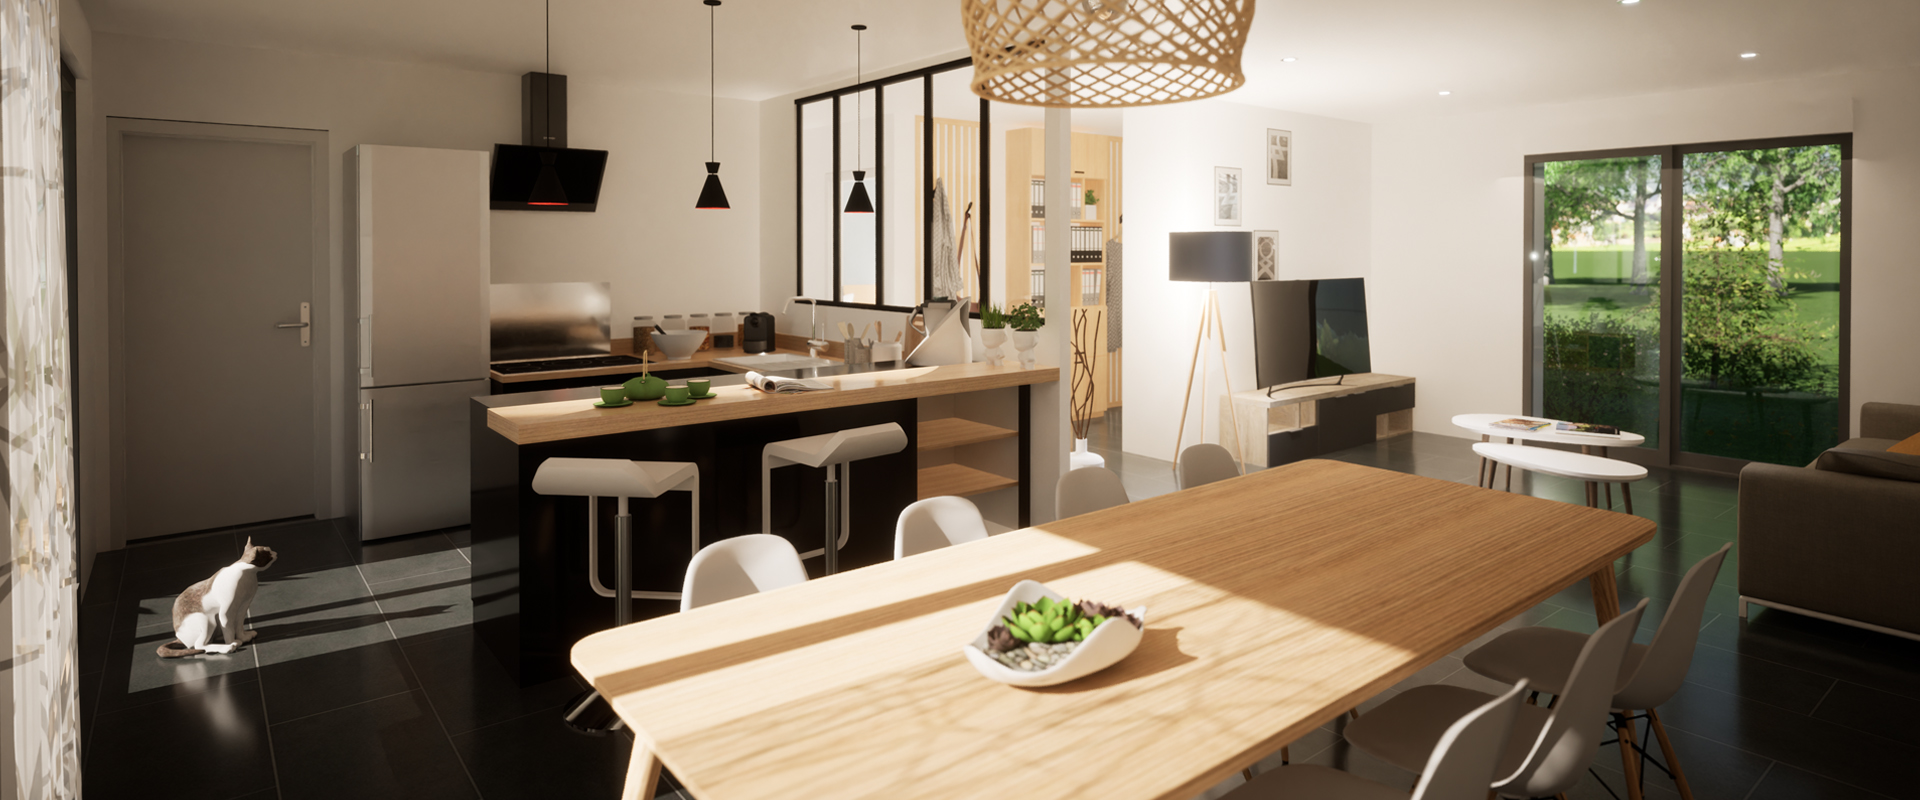 Rendu 3D réaliste intérieur d'une maison individuelle